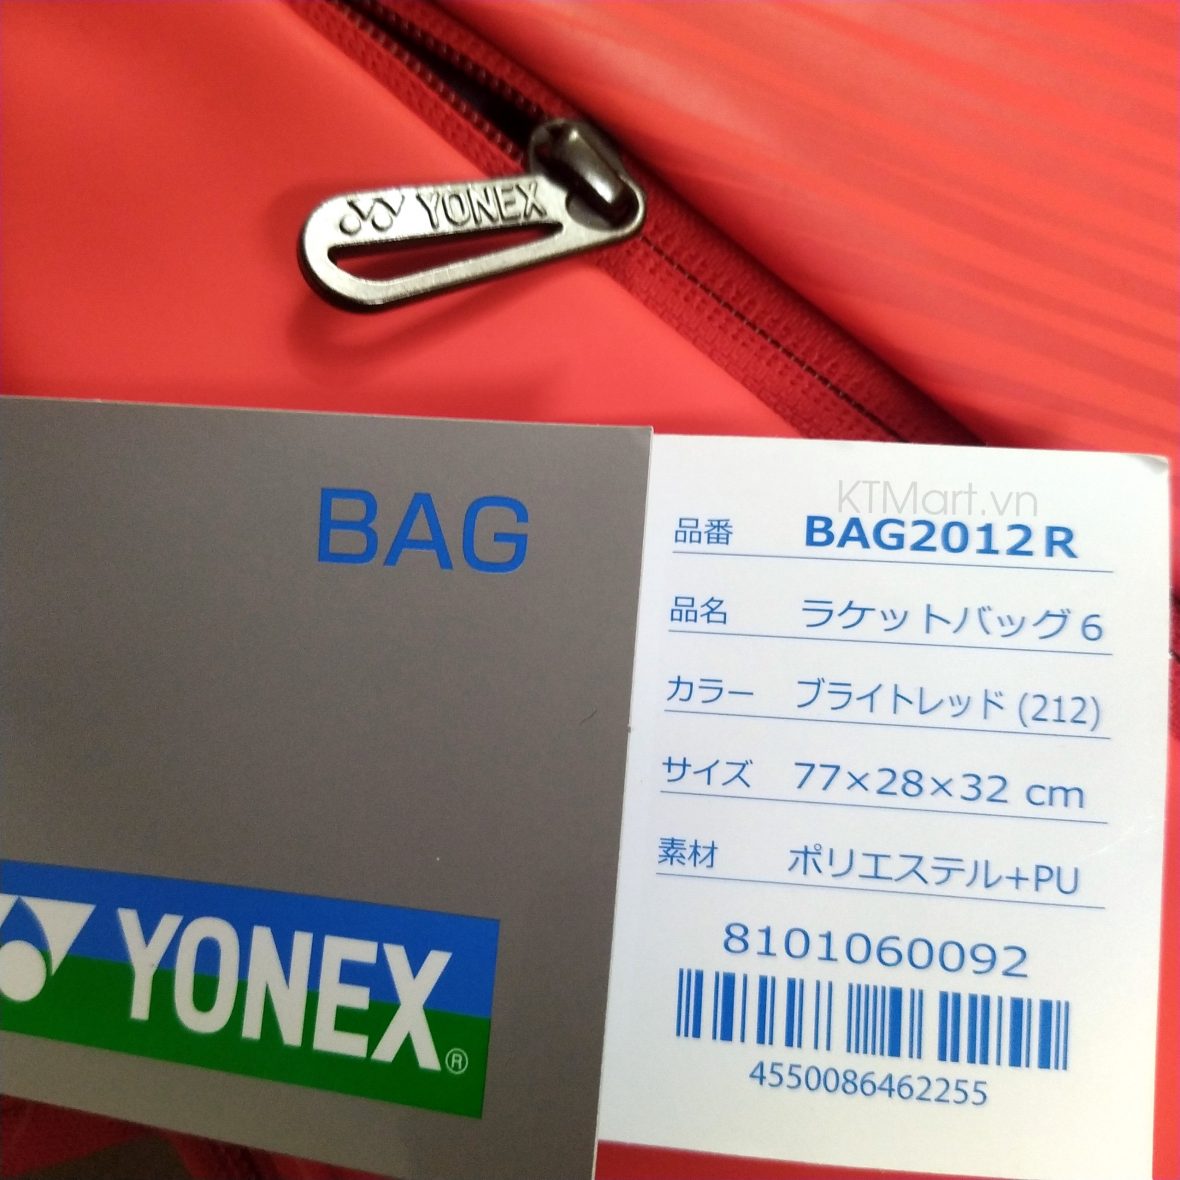 Yonex Racket Bag 6 Bright Red BAG2012R ktmart 10